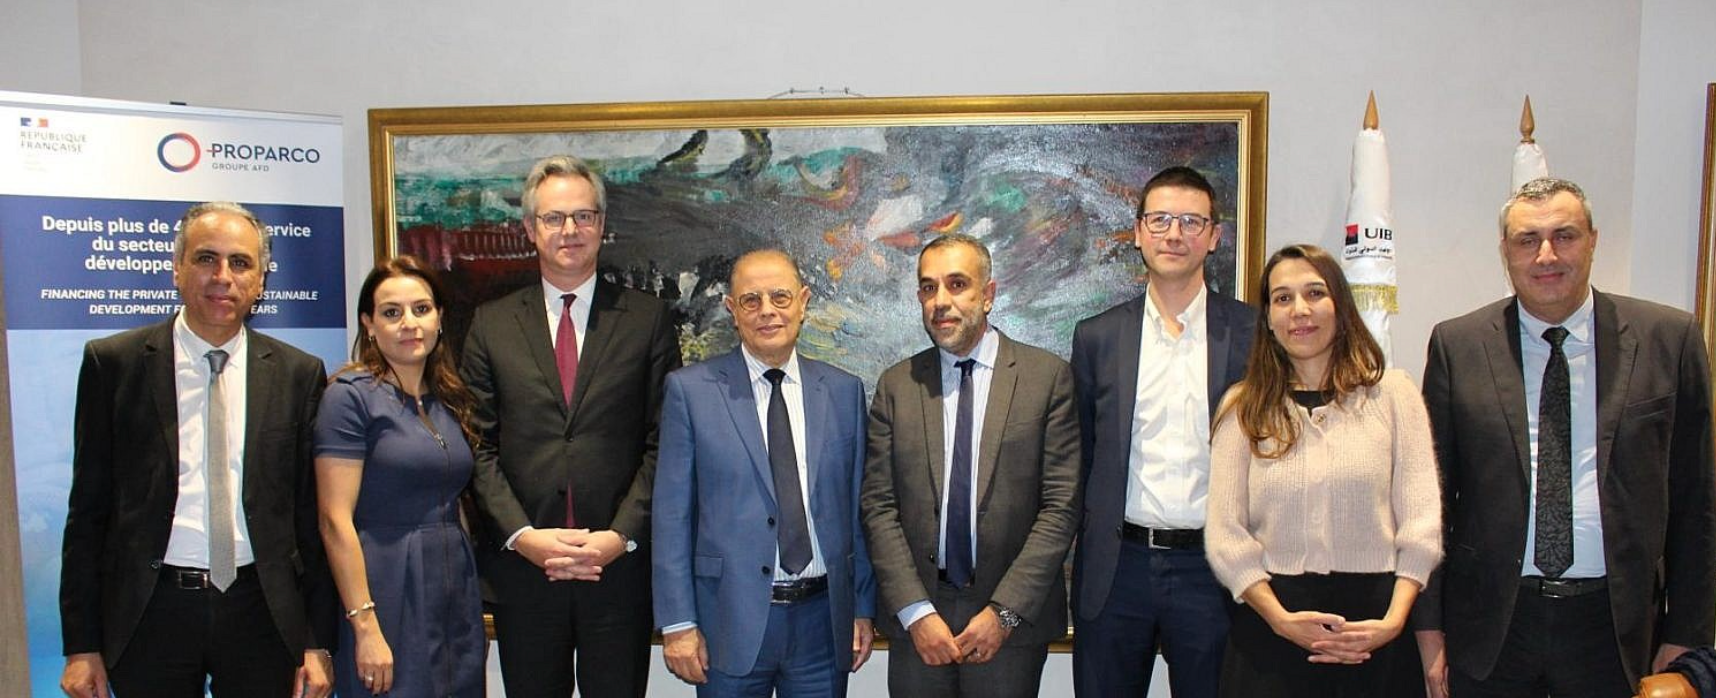 Proparco et l’UIB renforcent leur soutien aux entrepreneurs tunisiens affectés par la crise